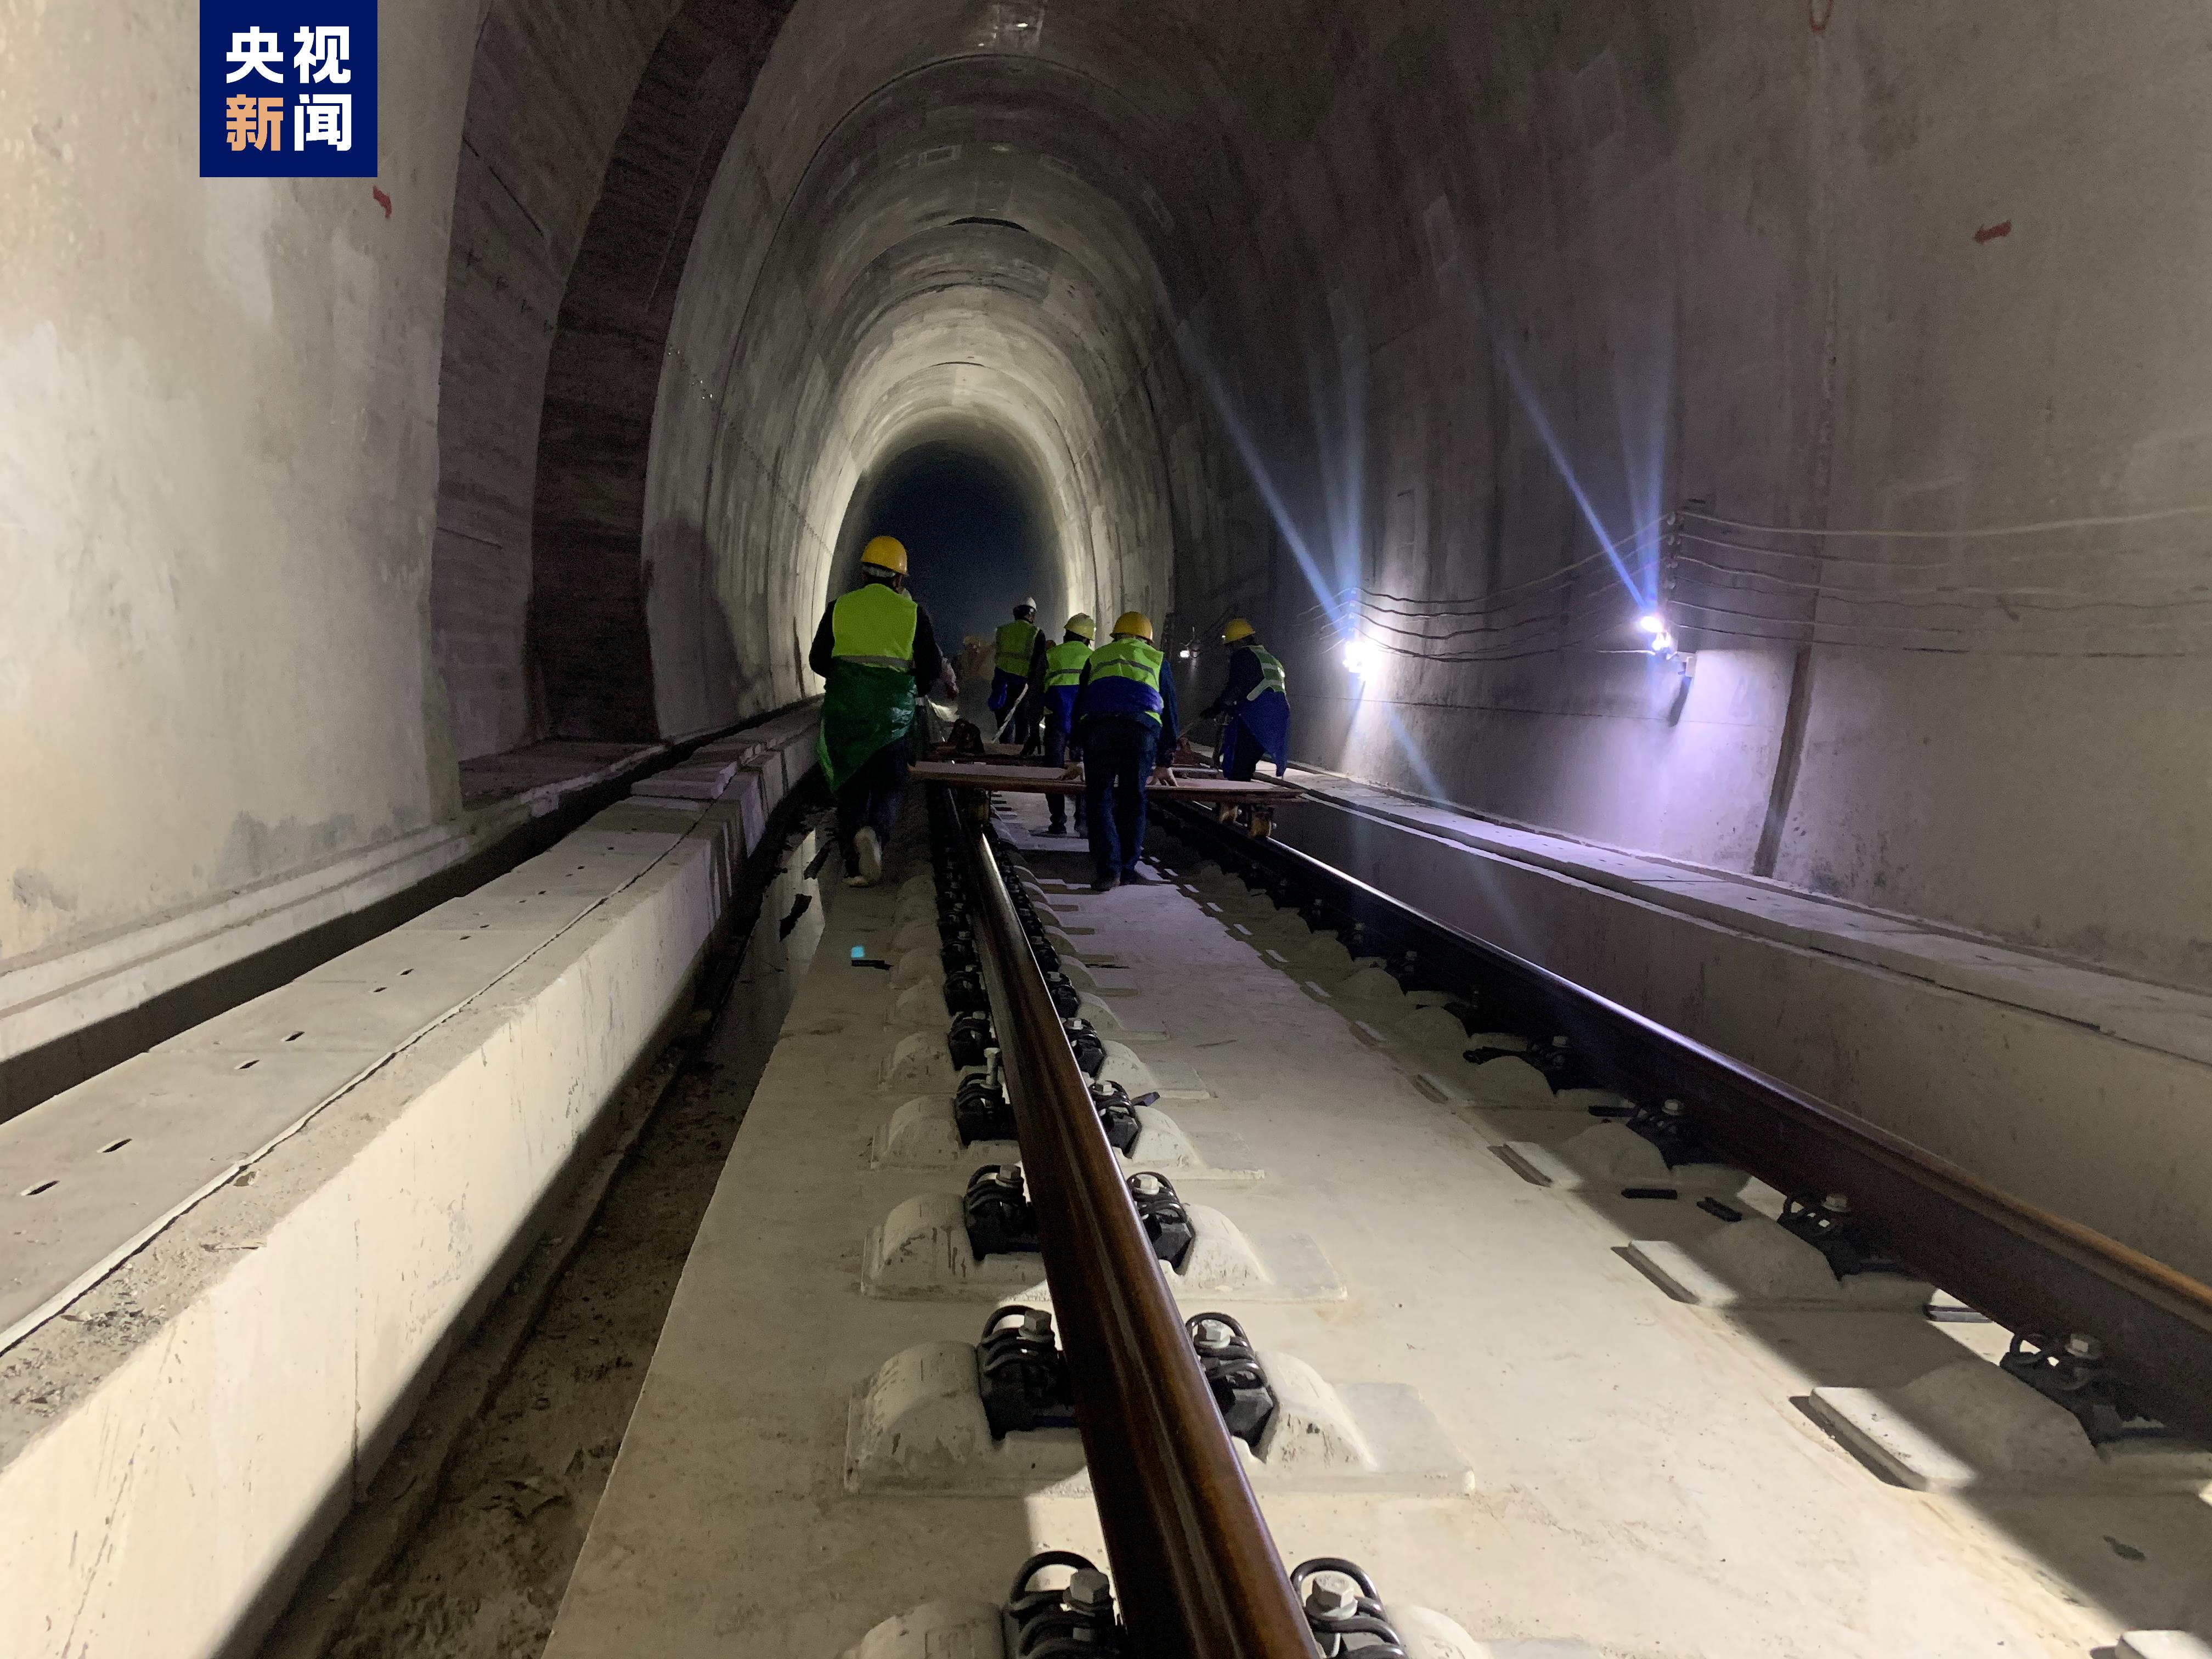 龙龙高铁开始铺轨 福建段预计今年底具备开通运营条件